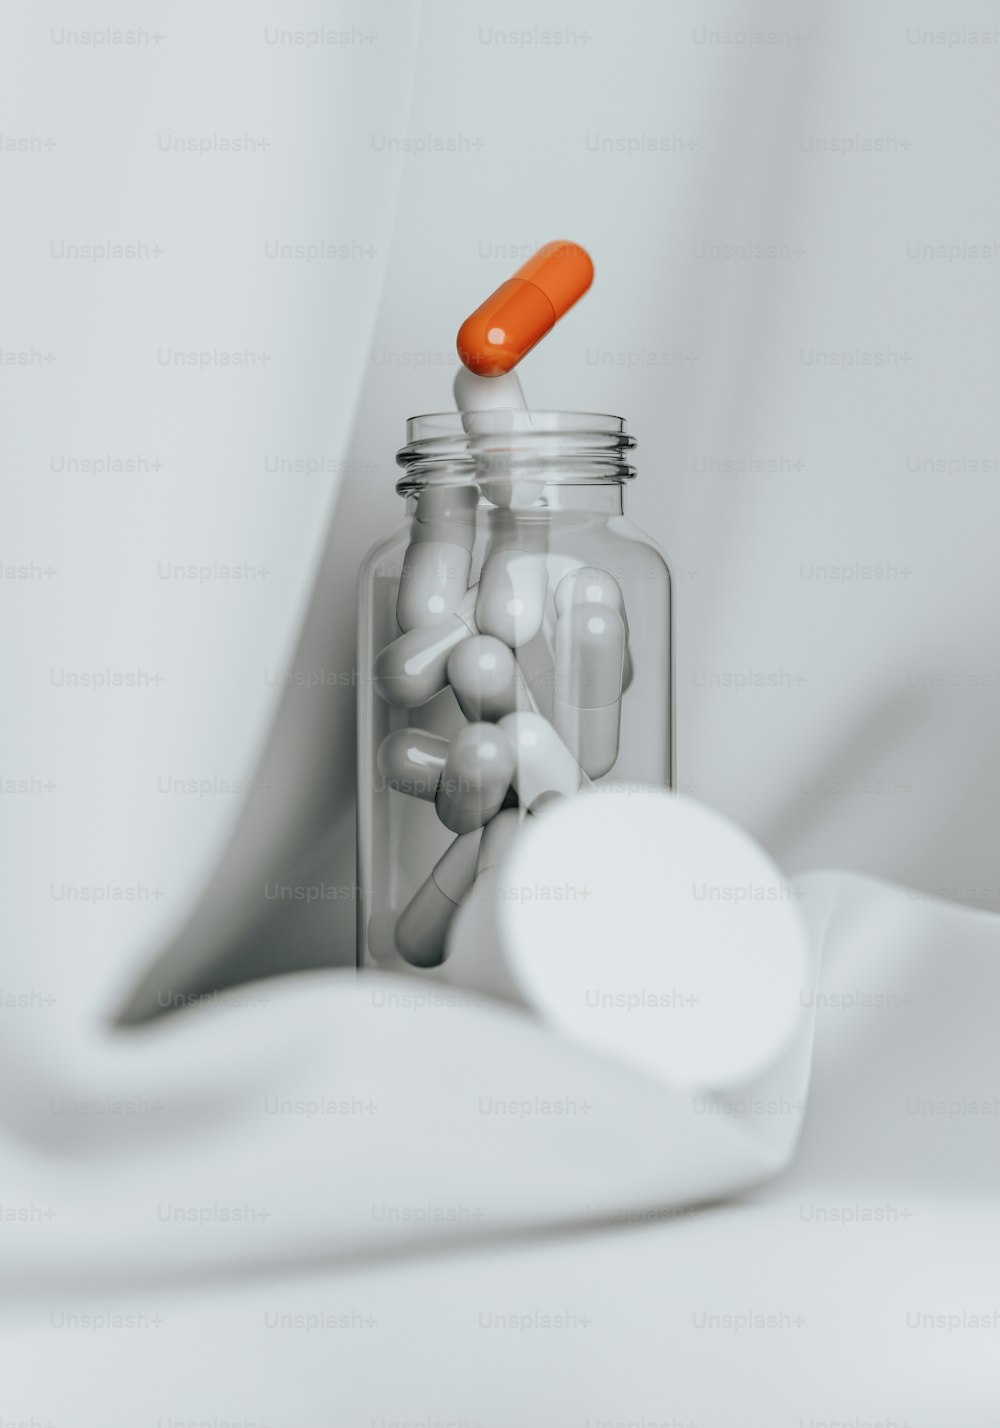 un frasco de vidrio lleno de pastillas junto a una cuchara